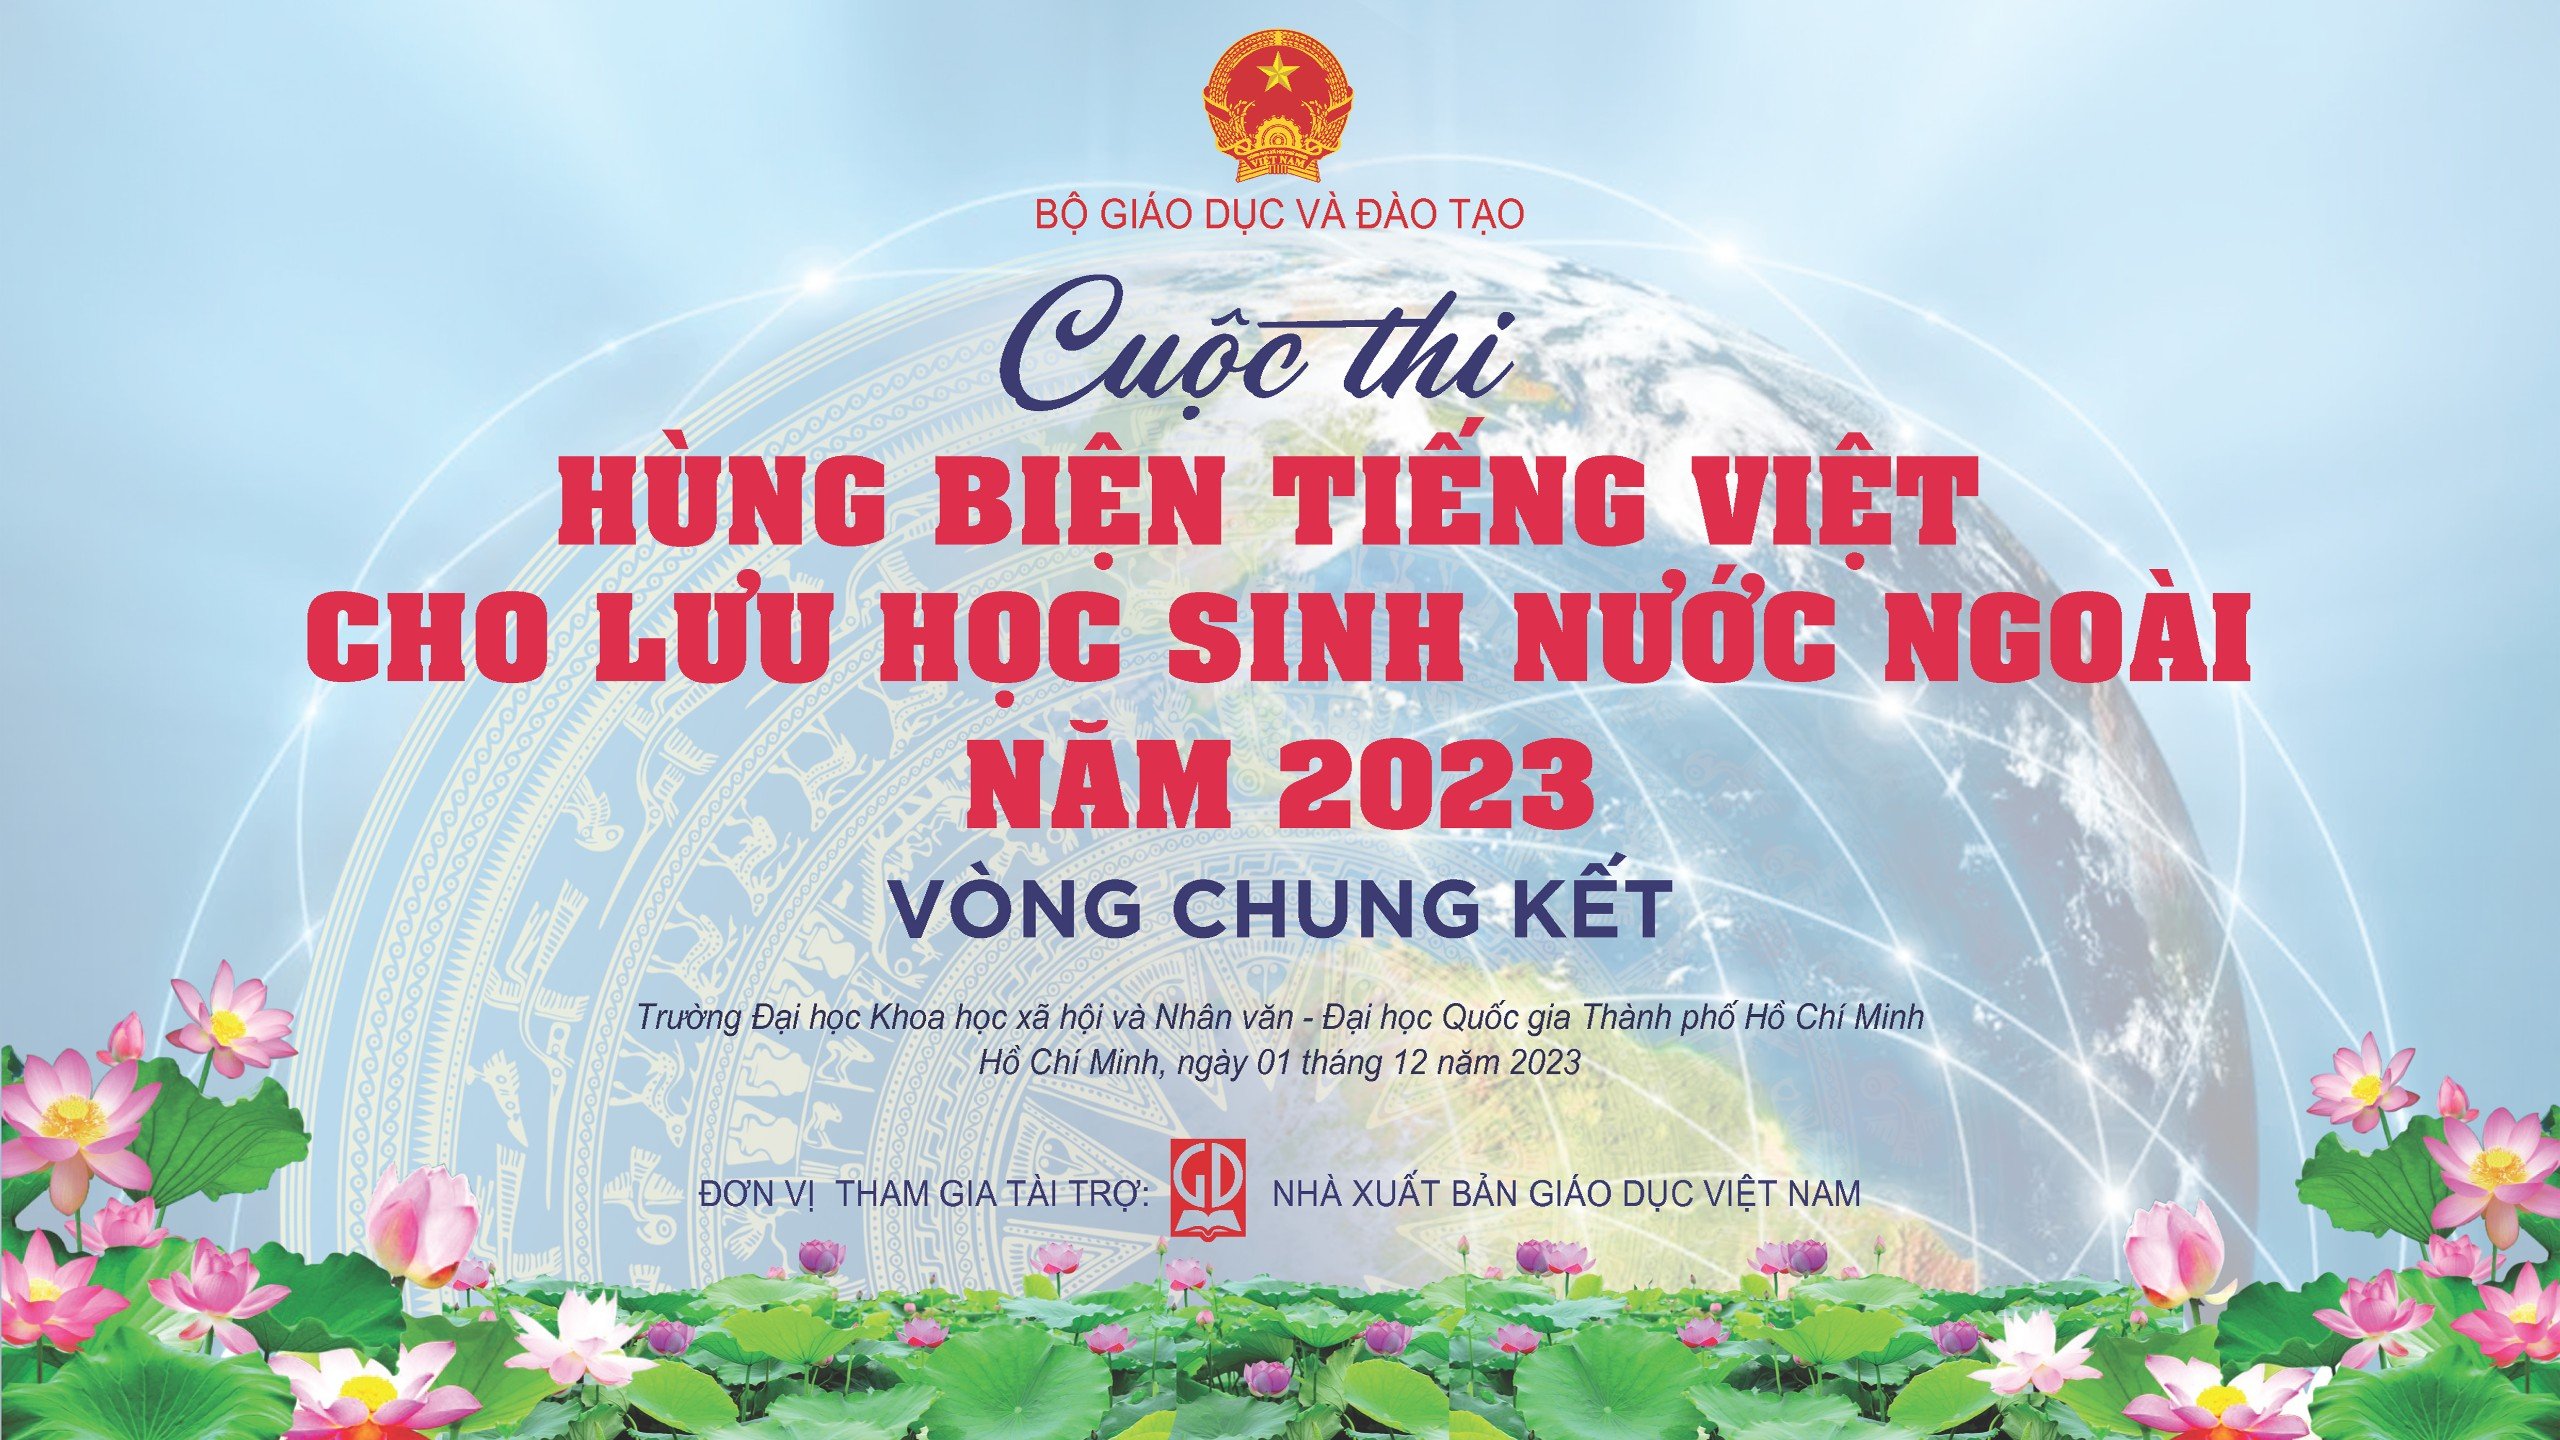 Chung kết Cuộc thi “Hùng biện tiếng Việt cho lưu học sinh nước ngoài” năm 2023